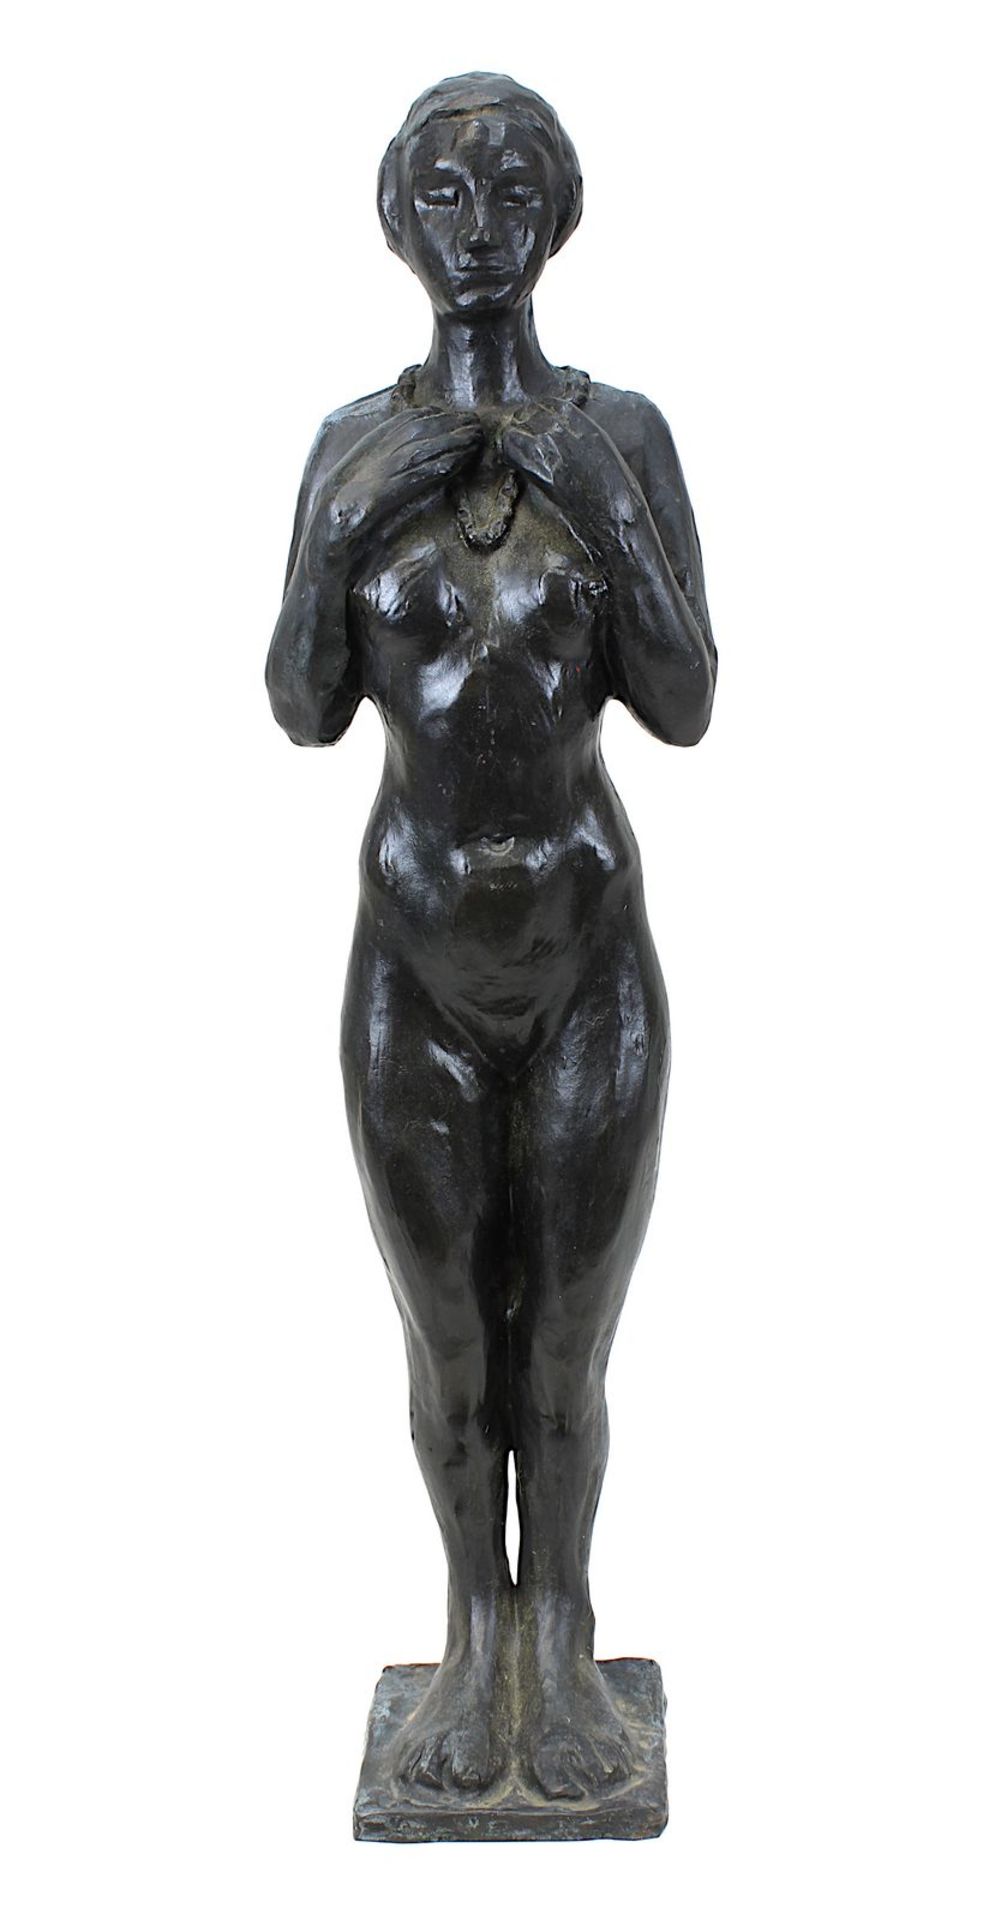 Monogrammist A.W. oder N.W., 20. Jh., stehender weiblicher Akt mit Kette, Bronze mit dunkler